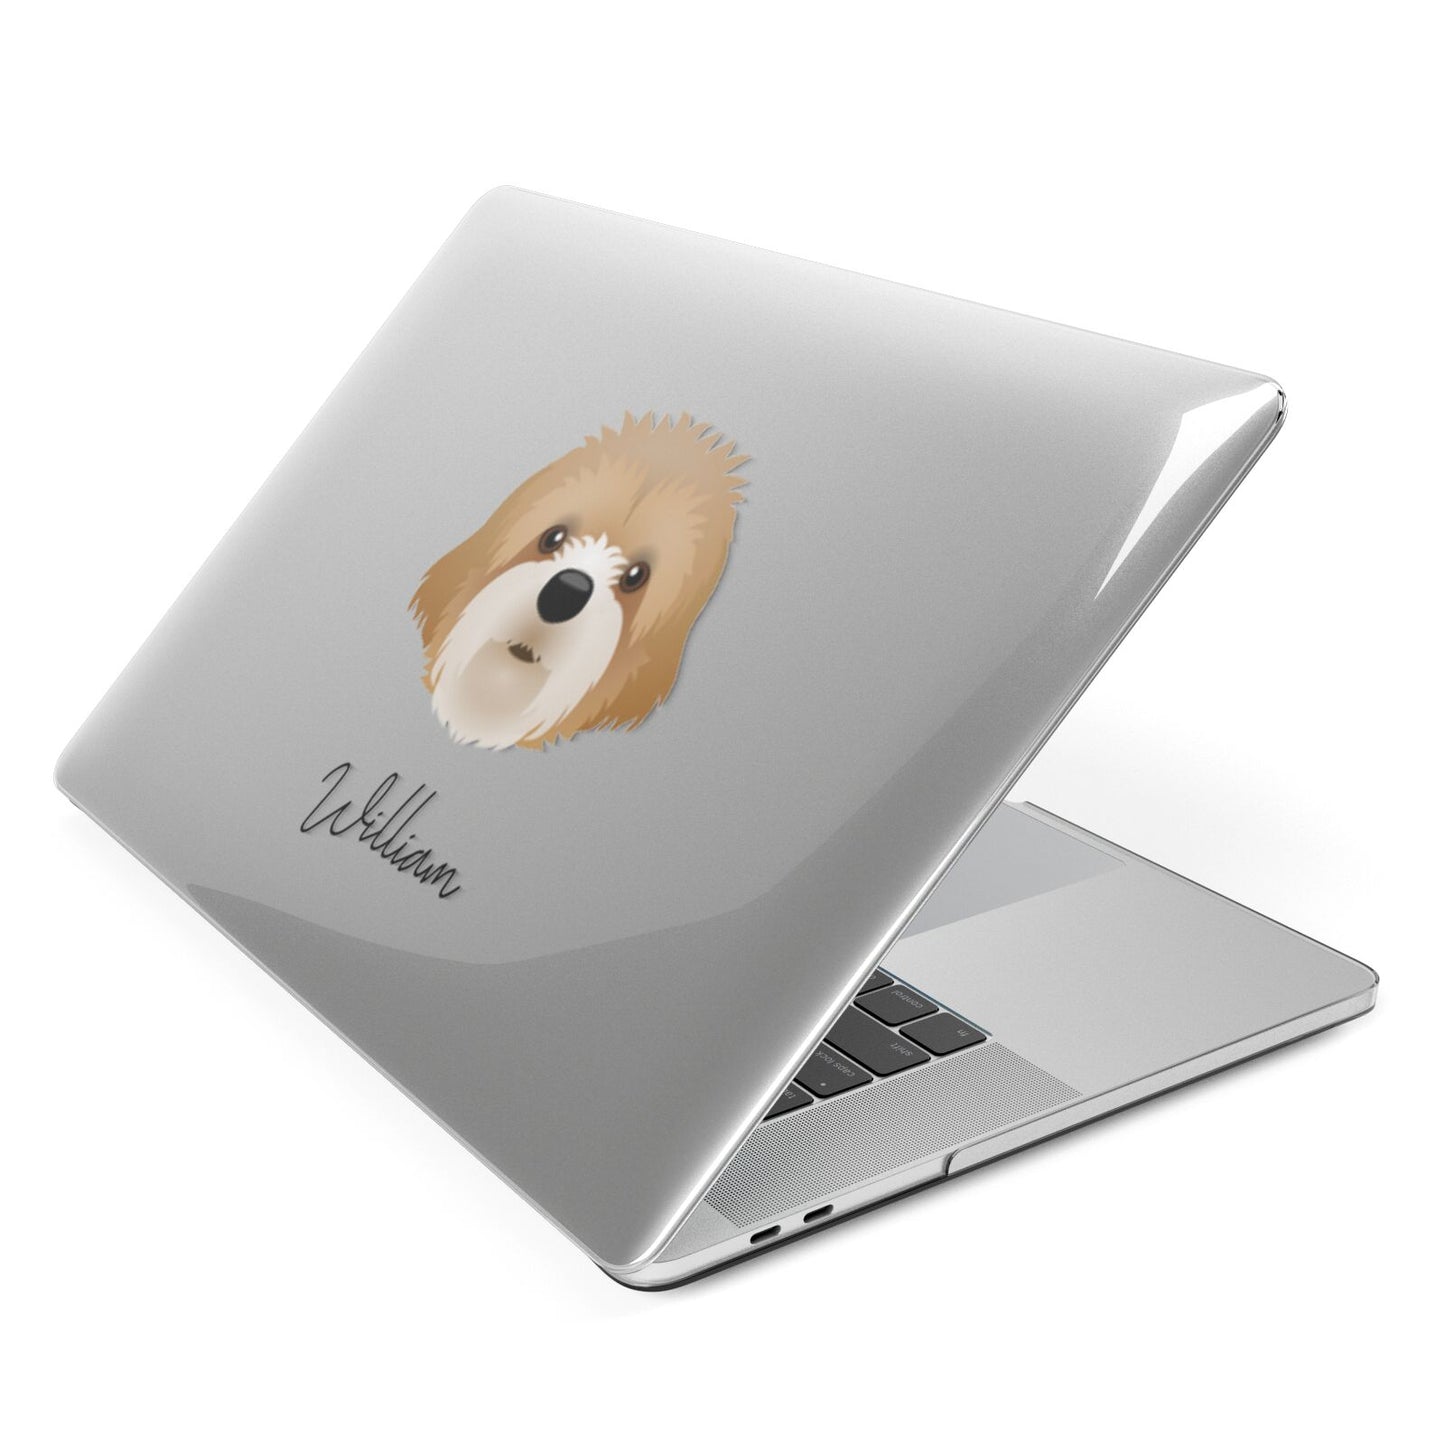 Cavapoochon Personalised Apple MacBook Case Side View